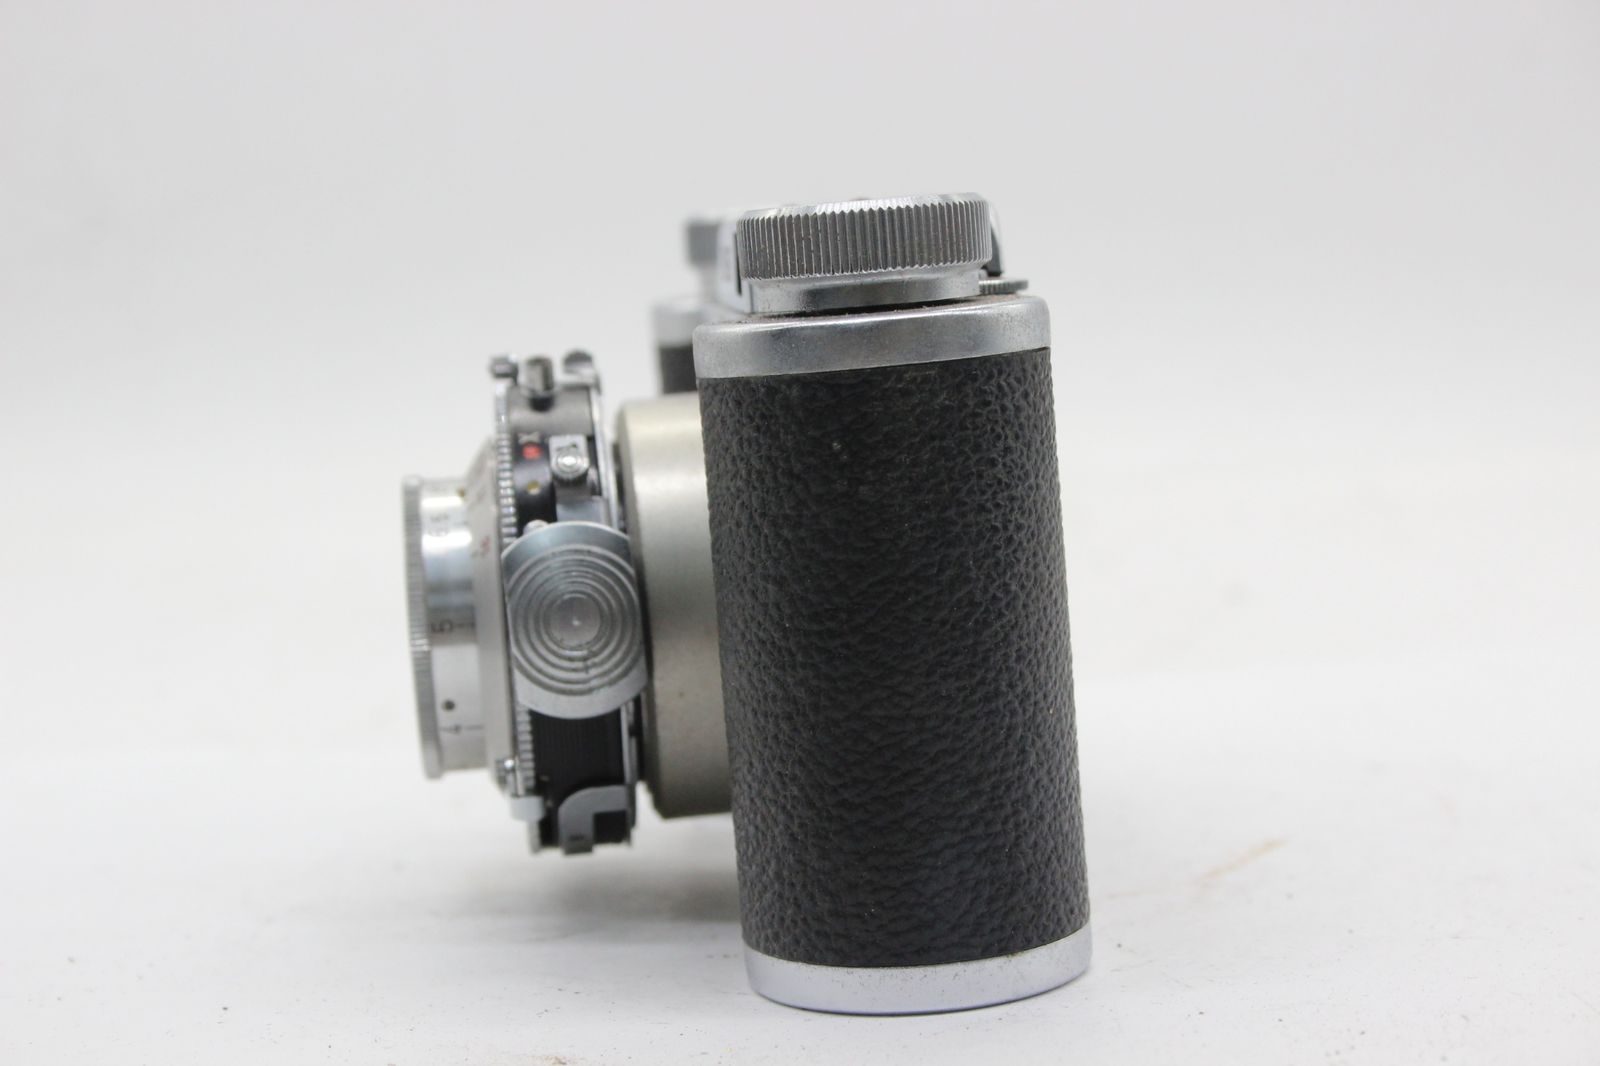 訳あり品】 EDINEX Steinheil Munchen Cassar 50mm F2.8 ケース付き カメラ s9176 - メルカリ